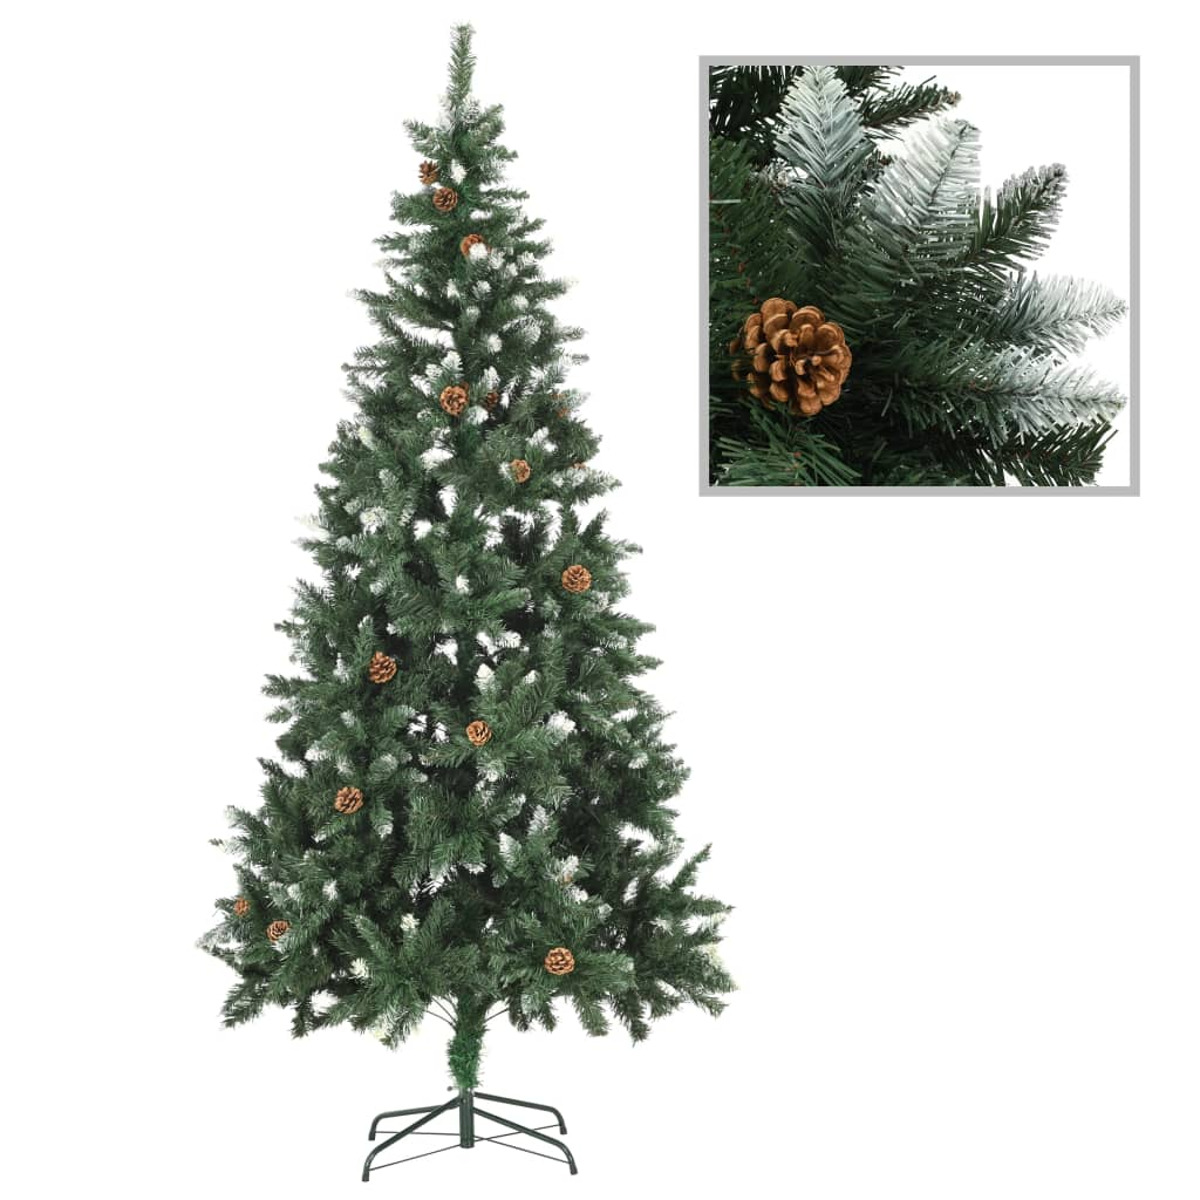 VIDAXL 3077801 Weihnachtsbaum